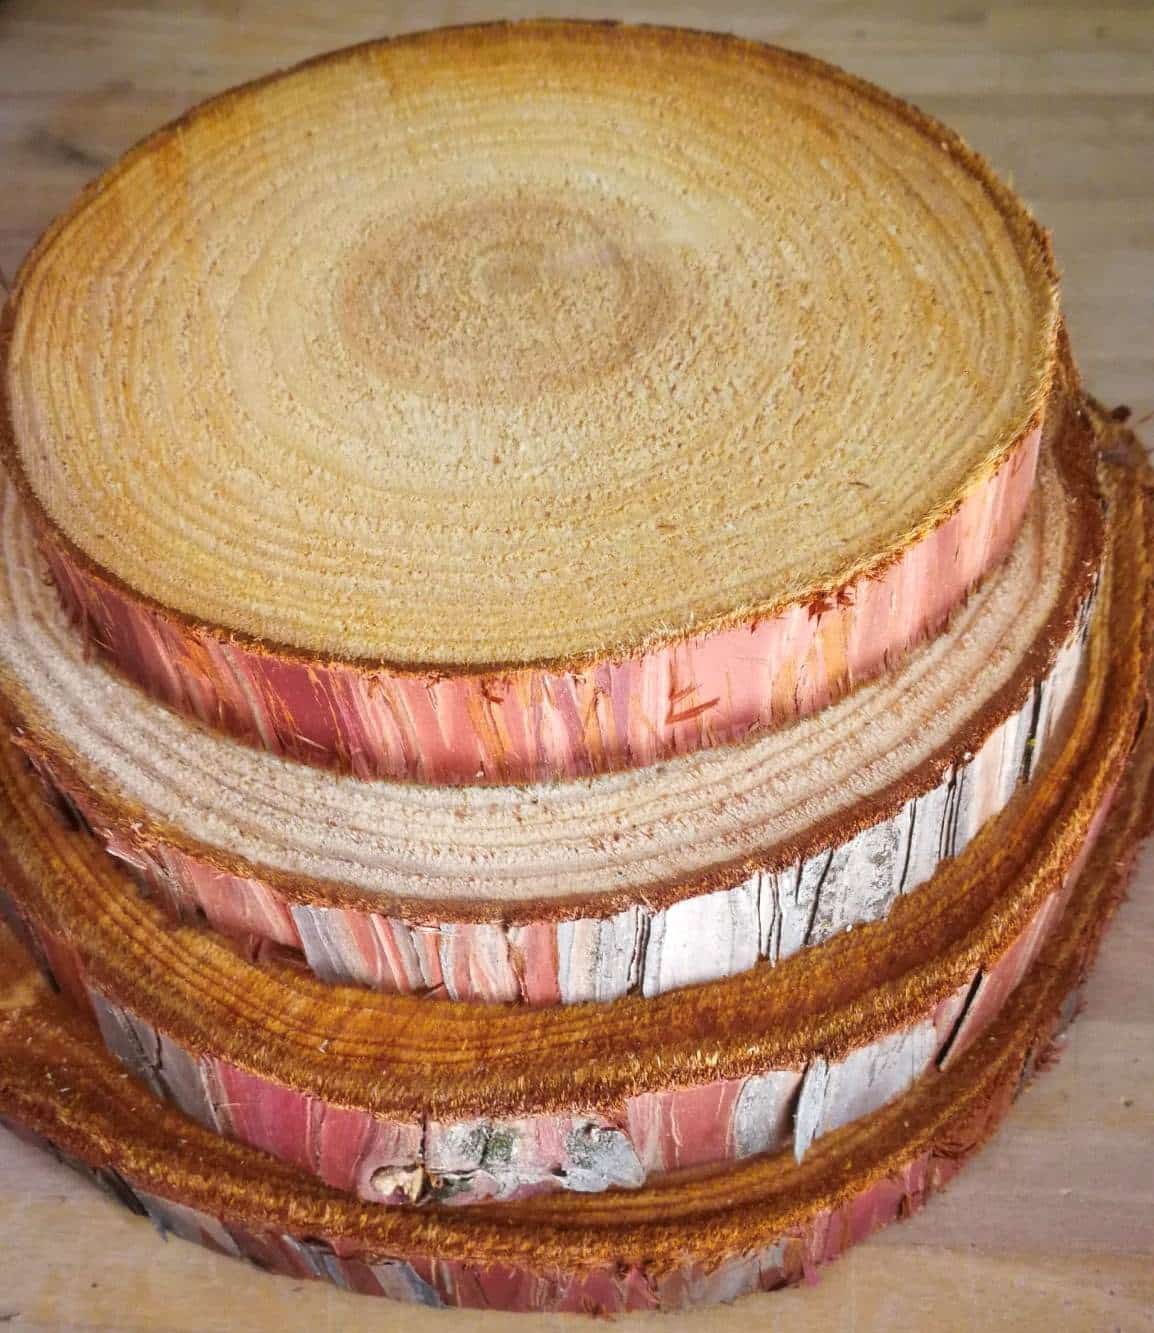 Rodajas de madera con grietas de cedro